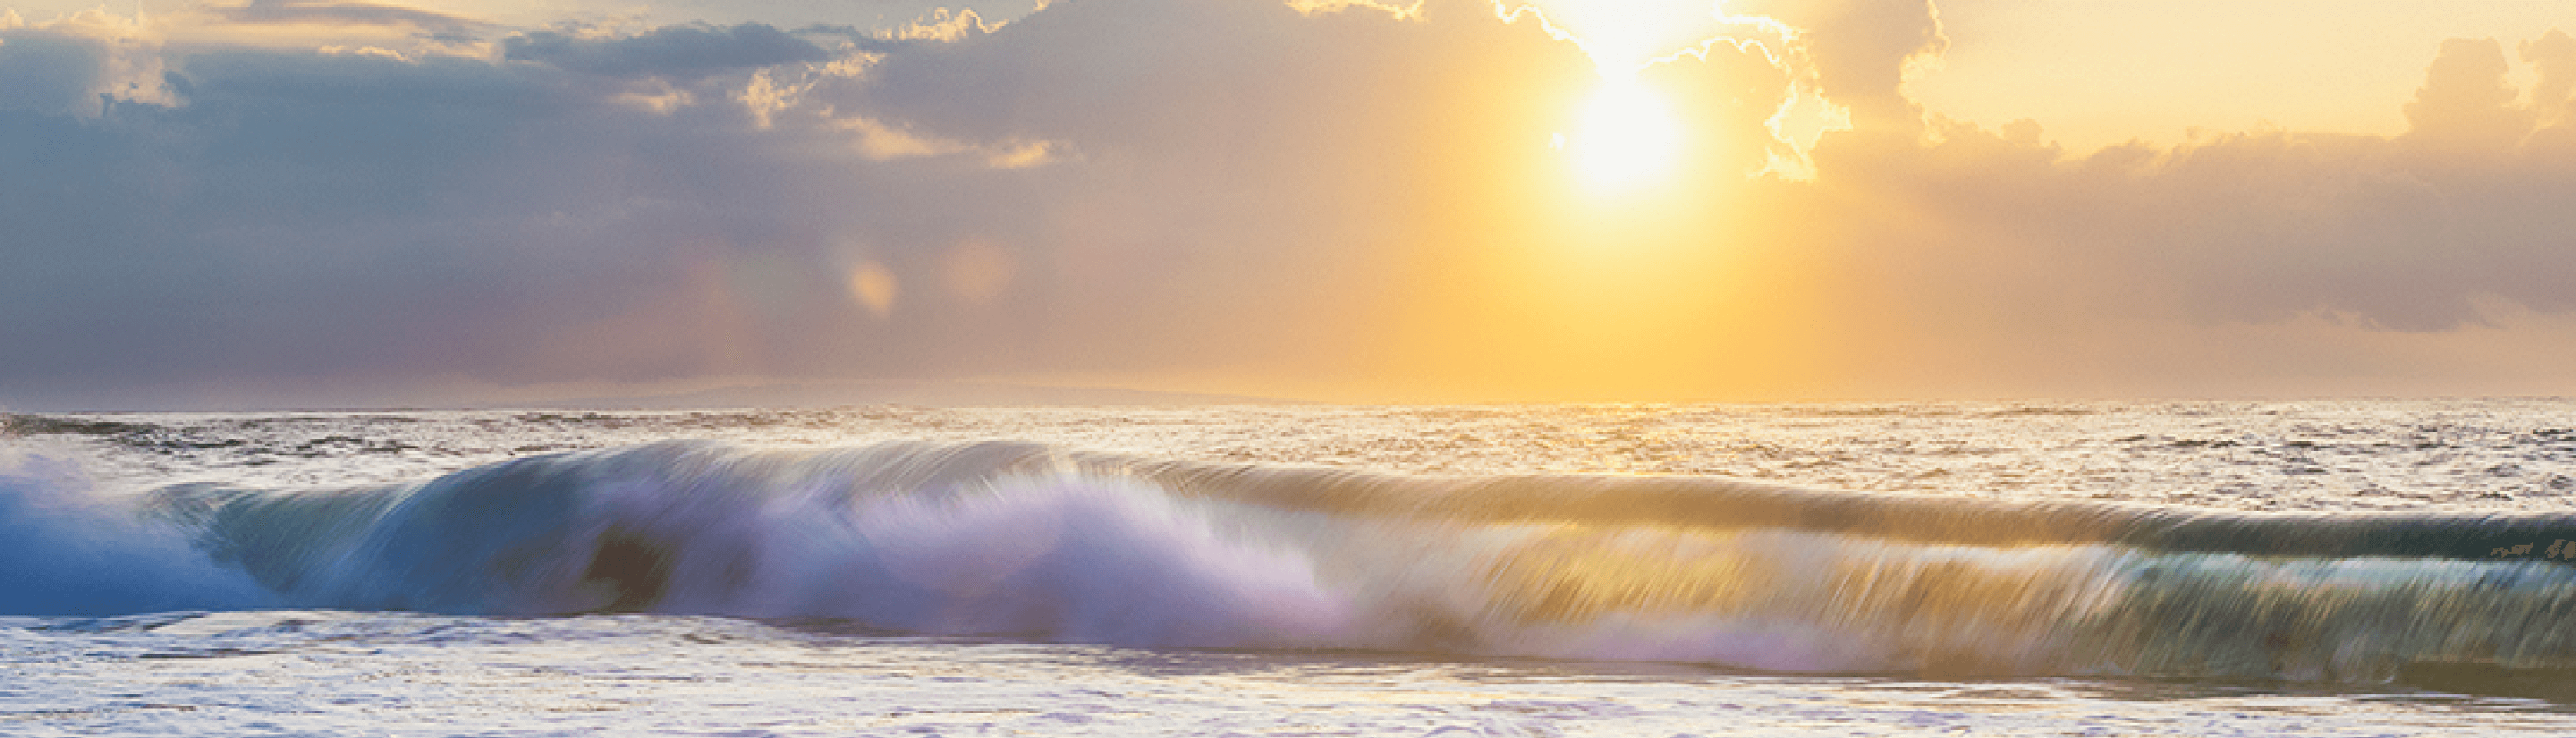 海と波と太陽